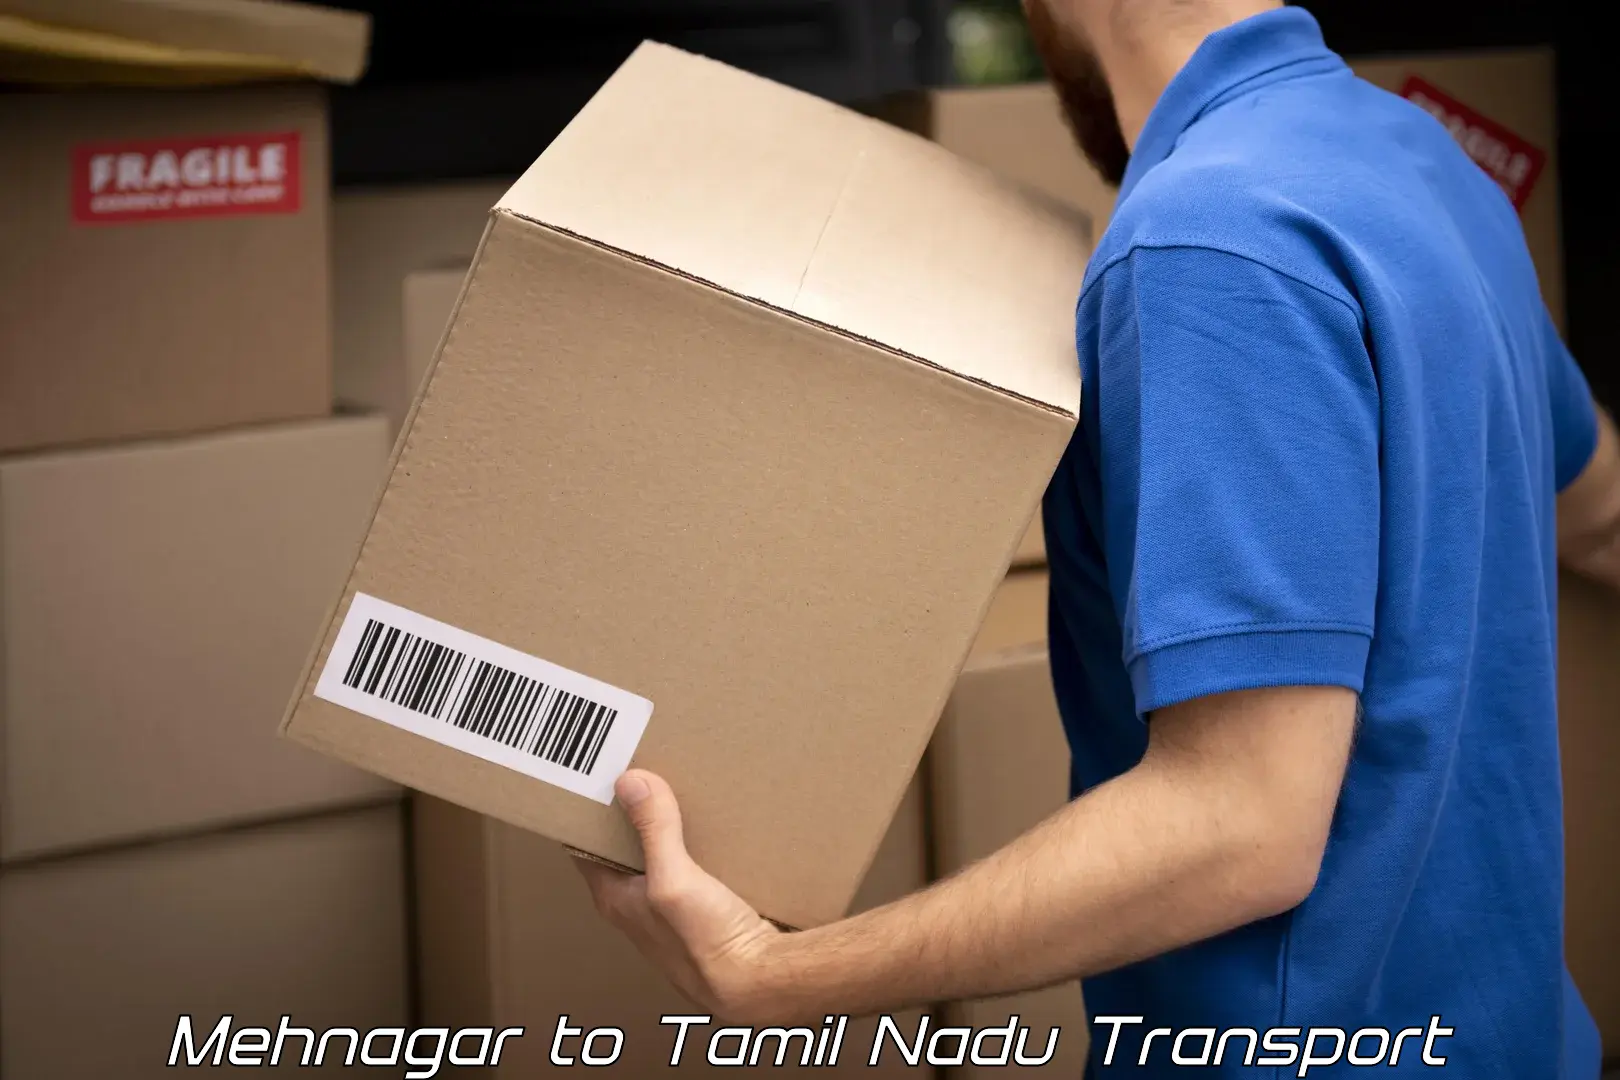 Daily parcel service transport Mehnagar to Chinnasalem